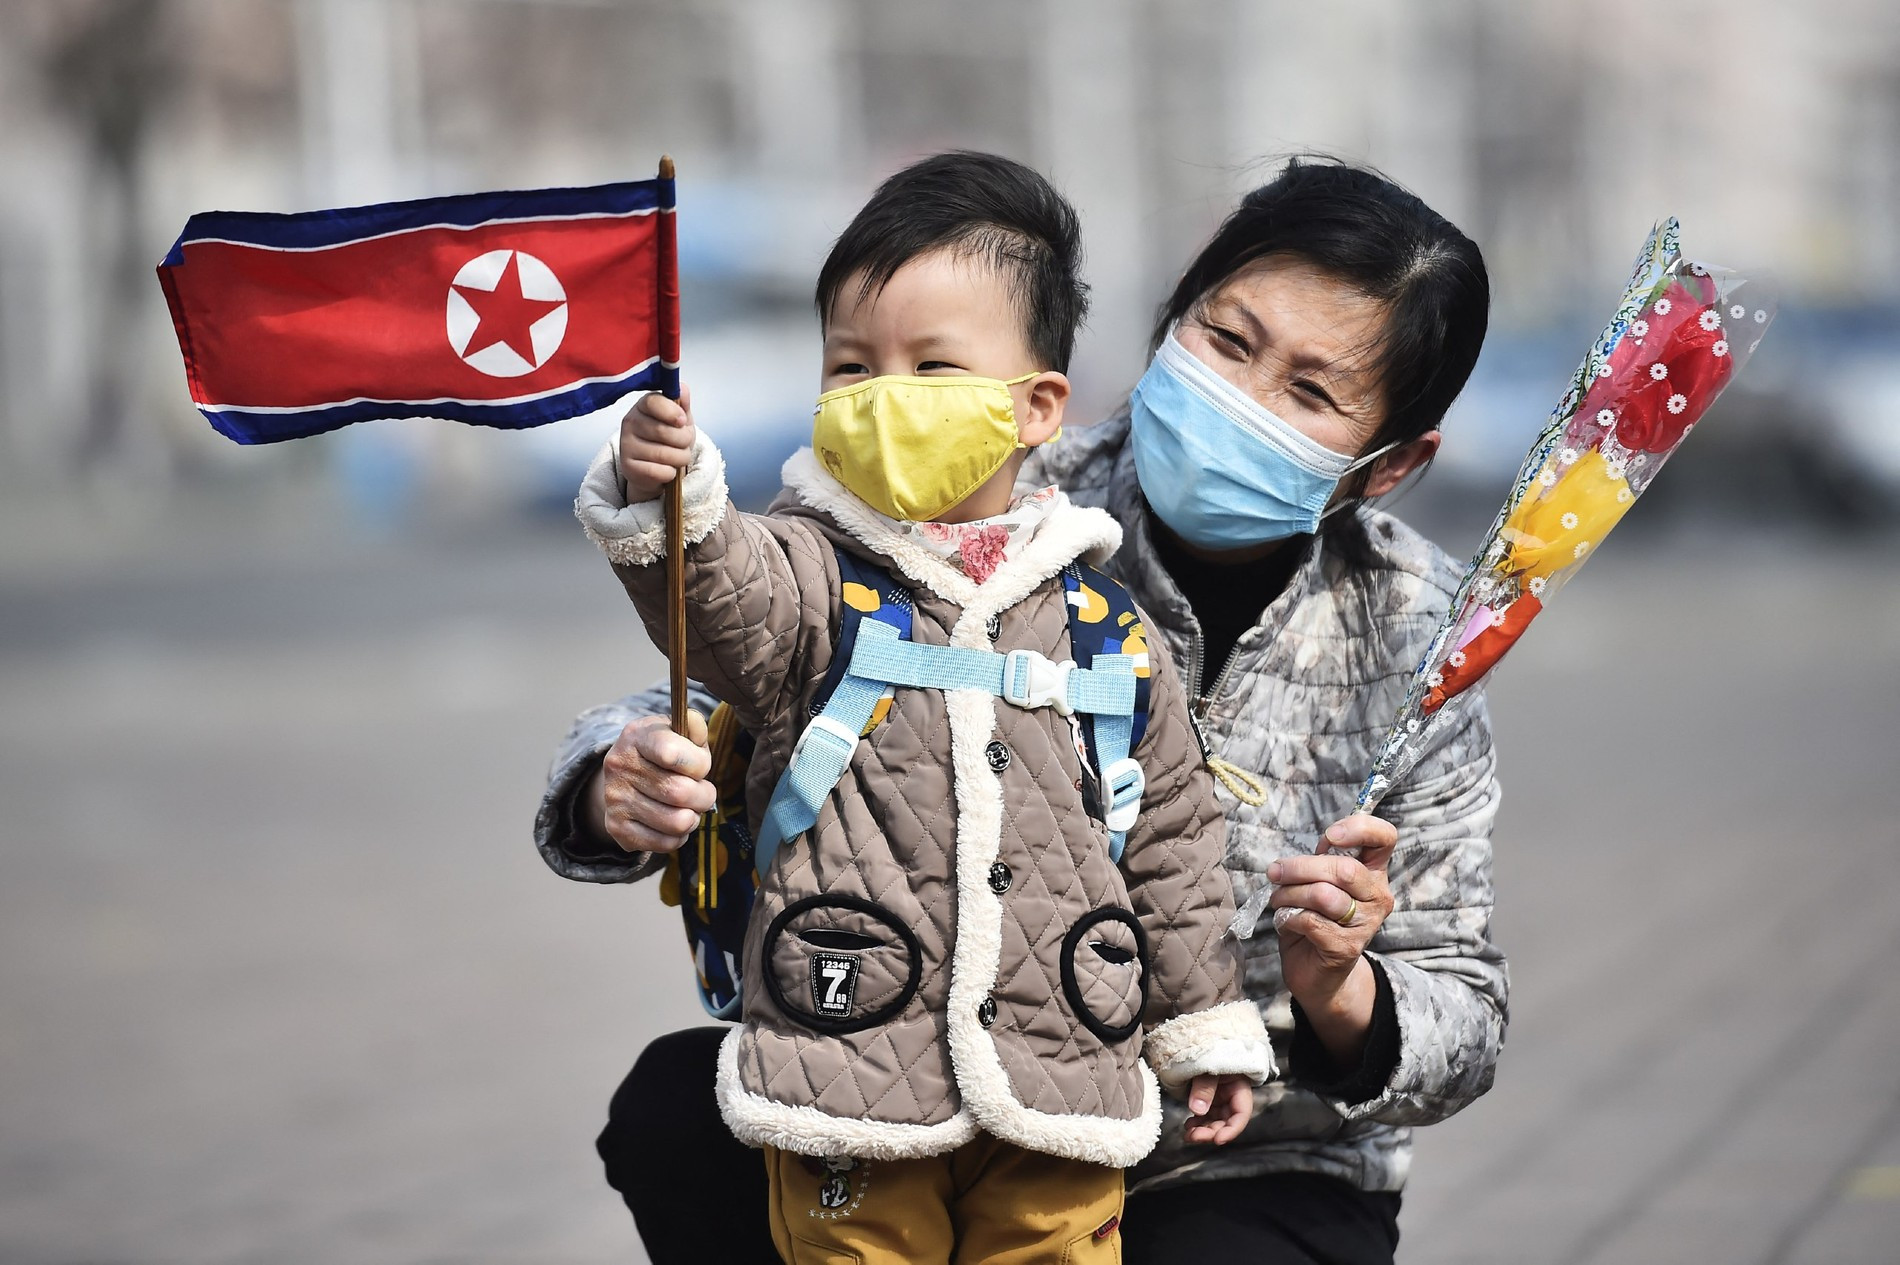 Мать и ребенок с национальным флагом в Пхеньяне
Фото: Getty Images